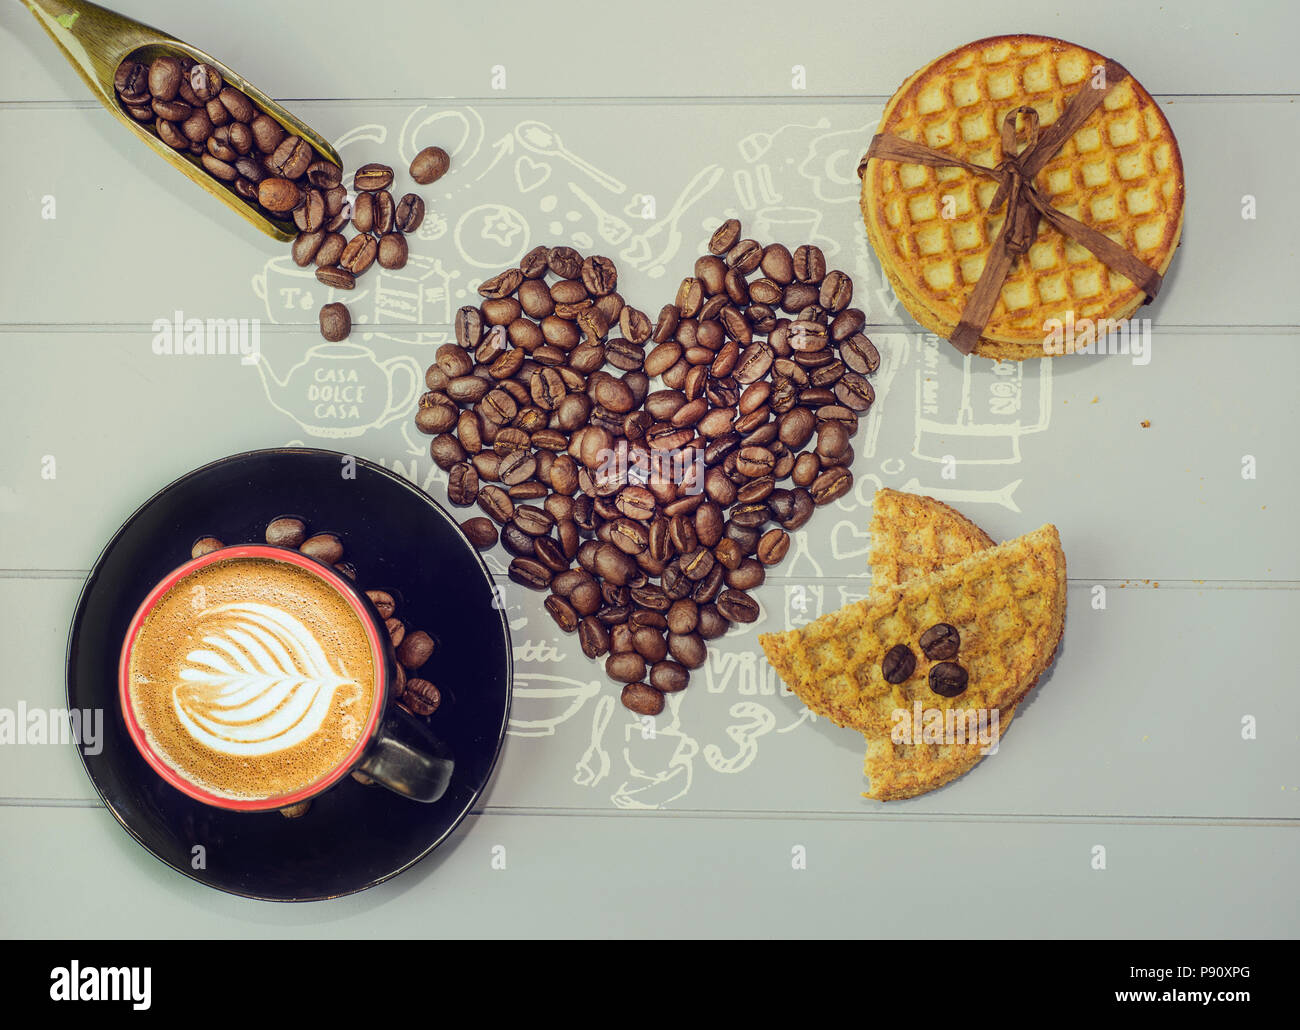 Una grande selezione di caffè gratuito stock foto. Trovare un diverso tipo di immagini di caffè incluse immagini di tazze di caffè, tazze da caffè, caffè in grani Foto Stock